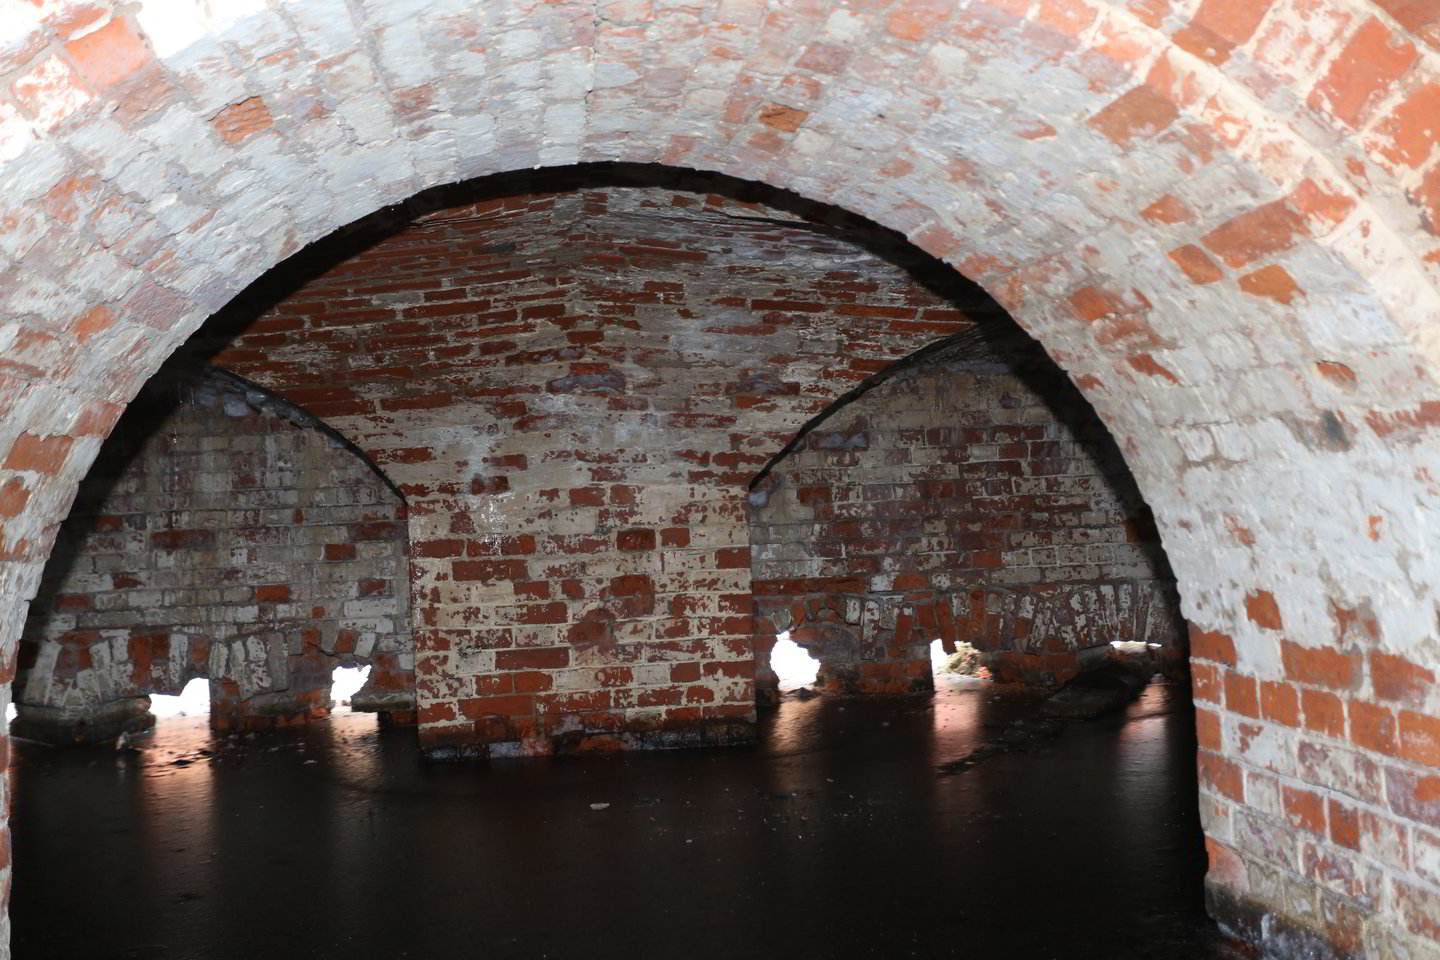  Didžiausios šikšnosparnių žiemavietės yra Kauno fortuose, Panerių tunelyje Vilniuje ir Klaipėdos rajone esančiuose karinės paskirties statiniuose. <br> M. Patašiaus nuotr.